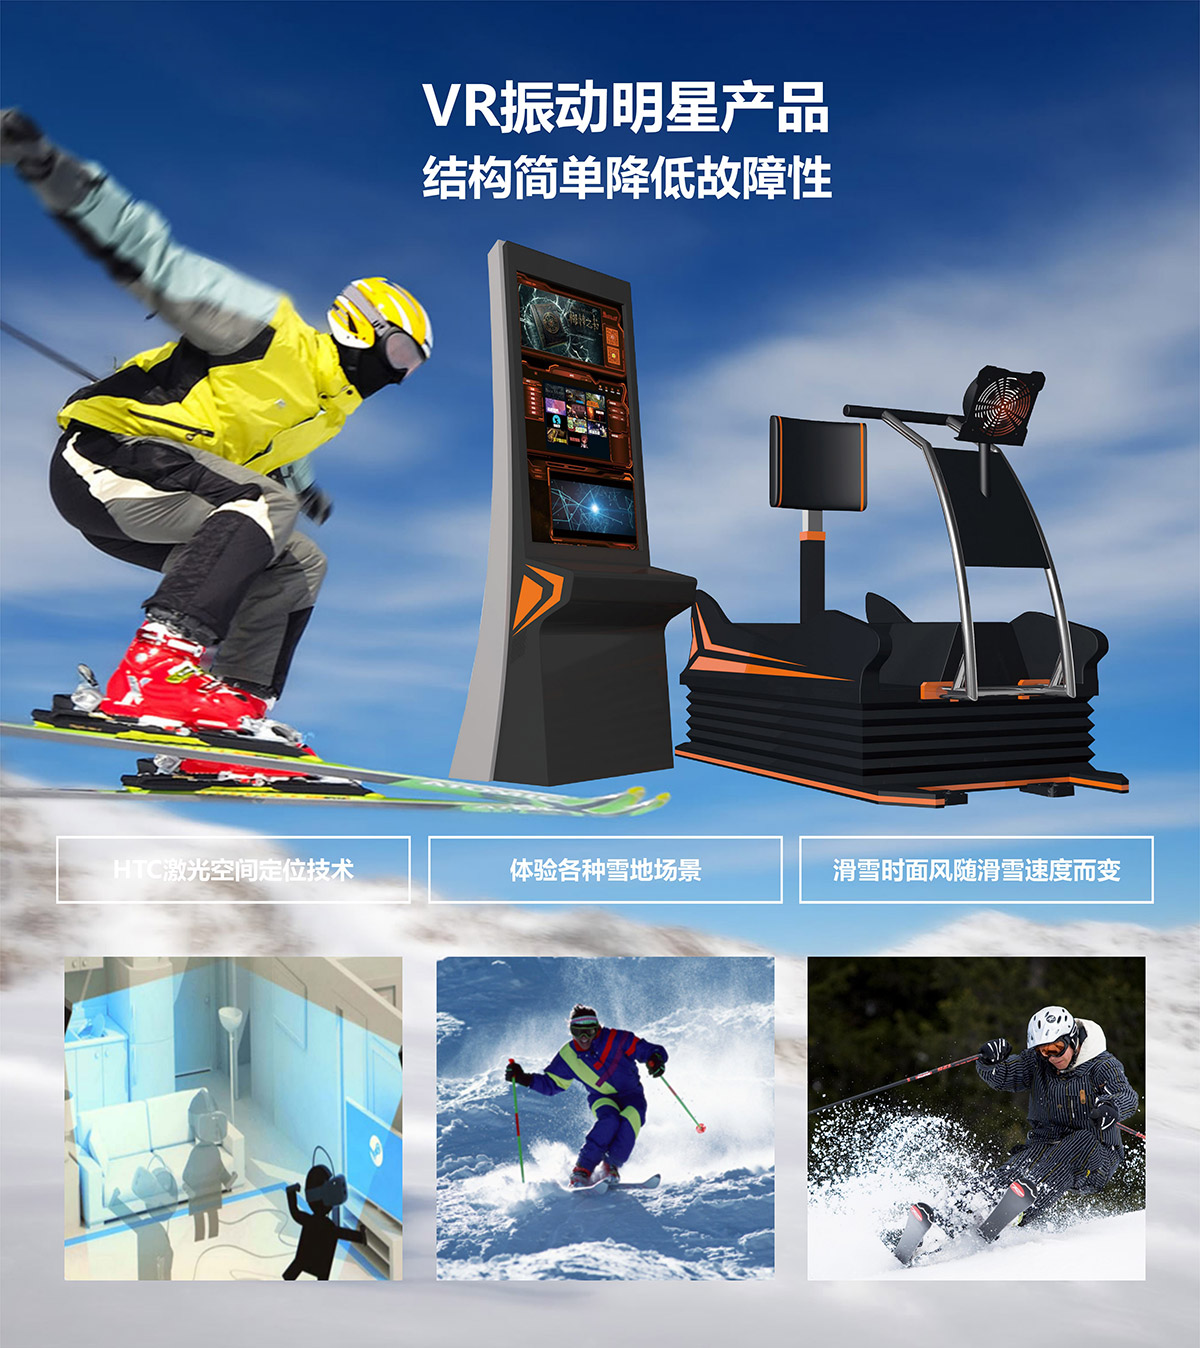 环幕影院VR明星产品模拟滑雪.jpg